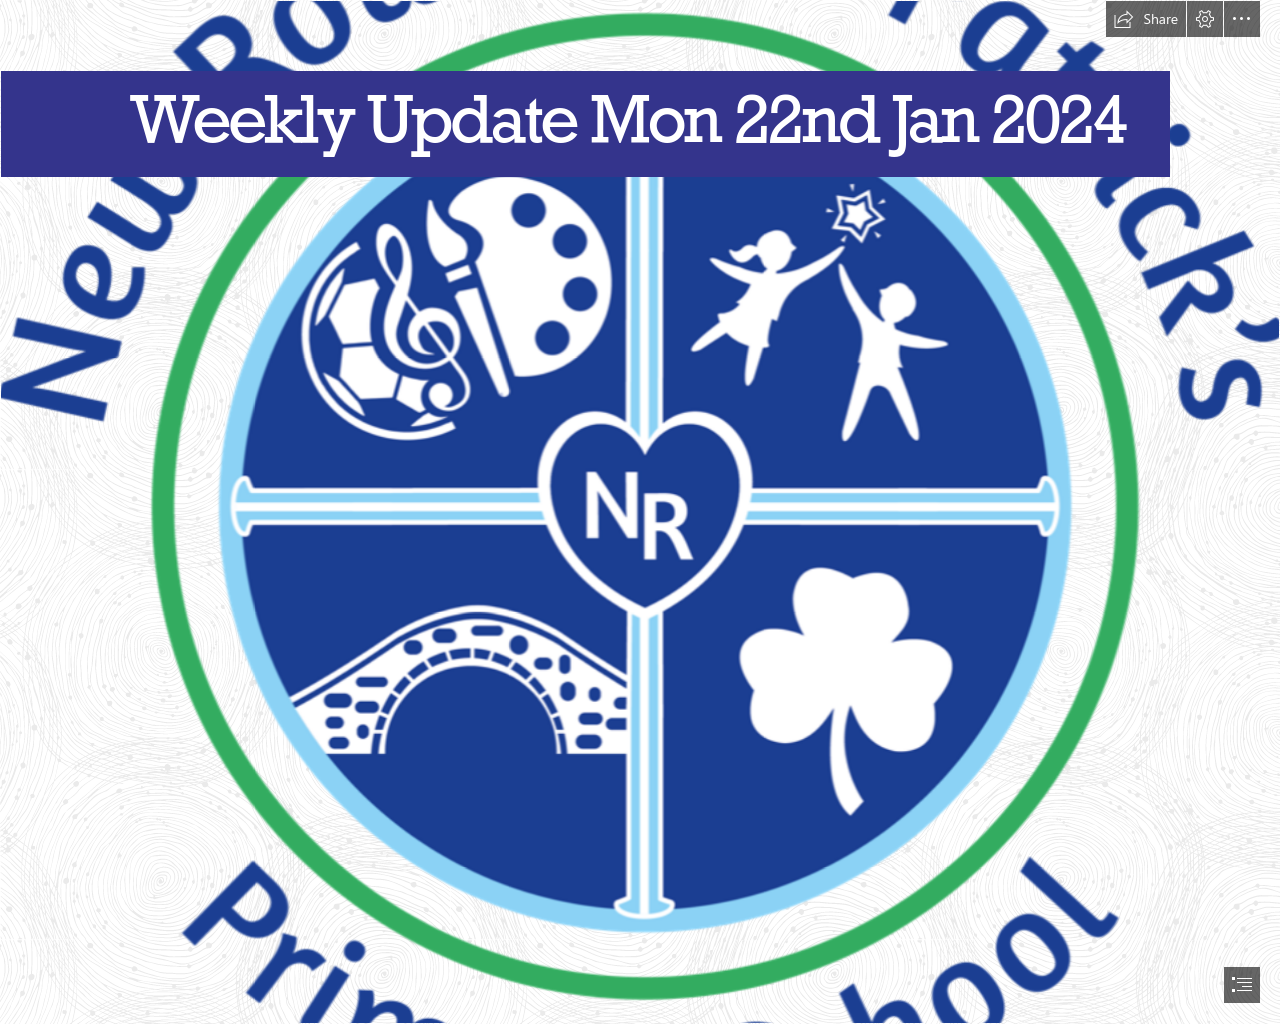 Weekly Update Monday 22nd January 2024